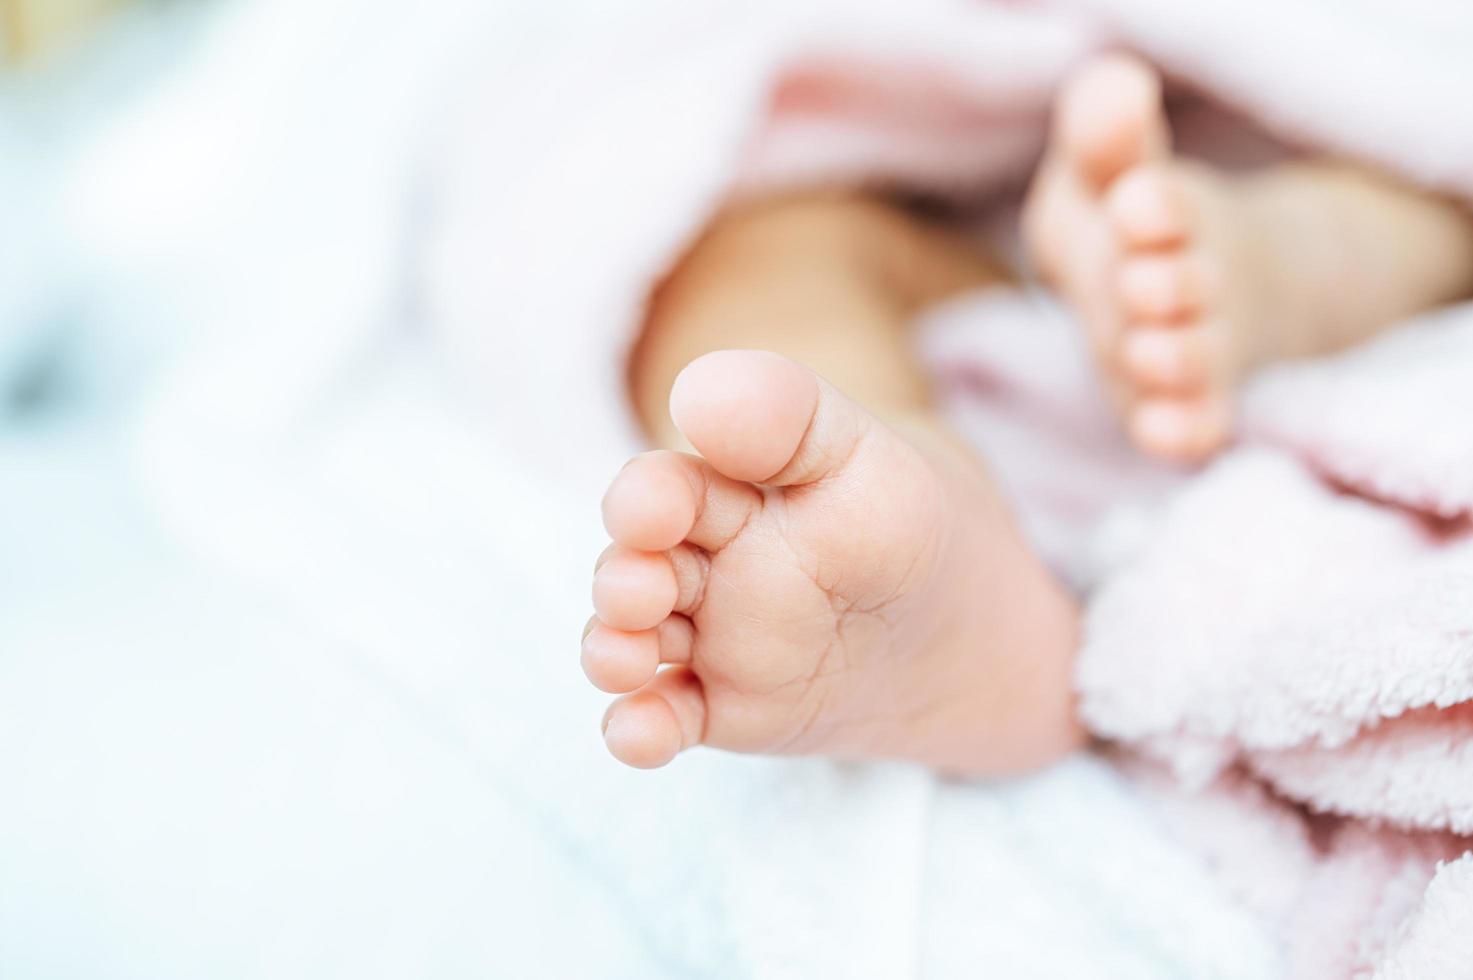 pies de bebé recién nacido foto